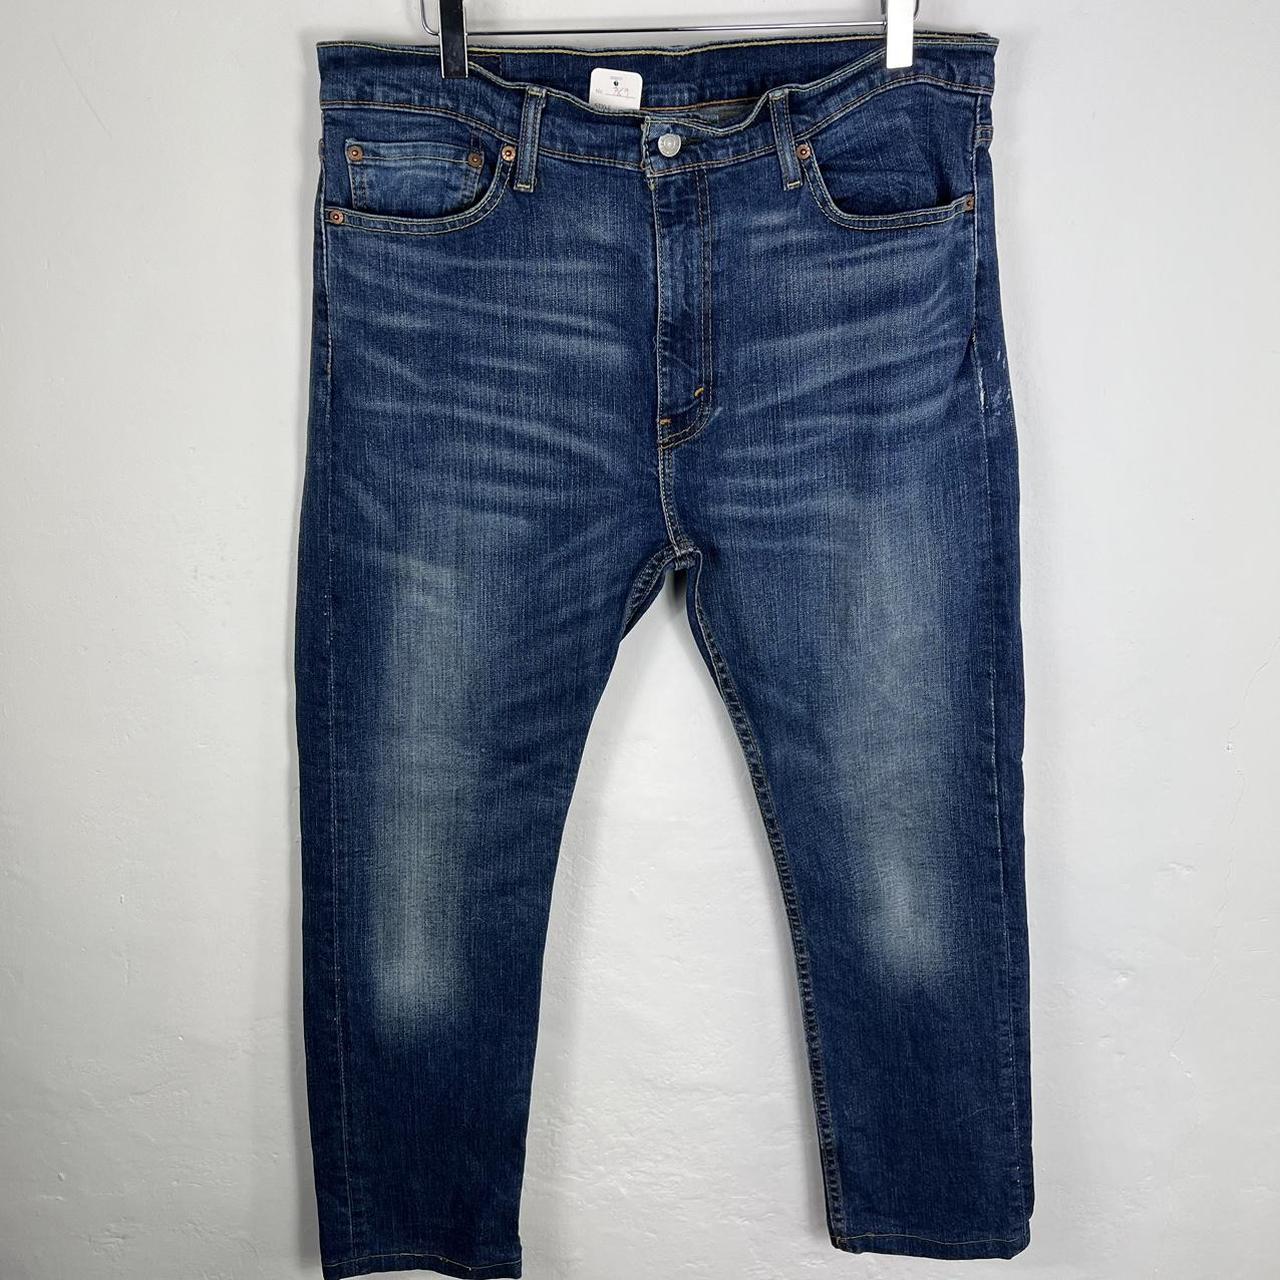 Levi’s 511 jeans 36x32